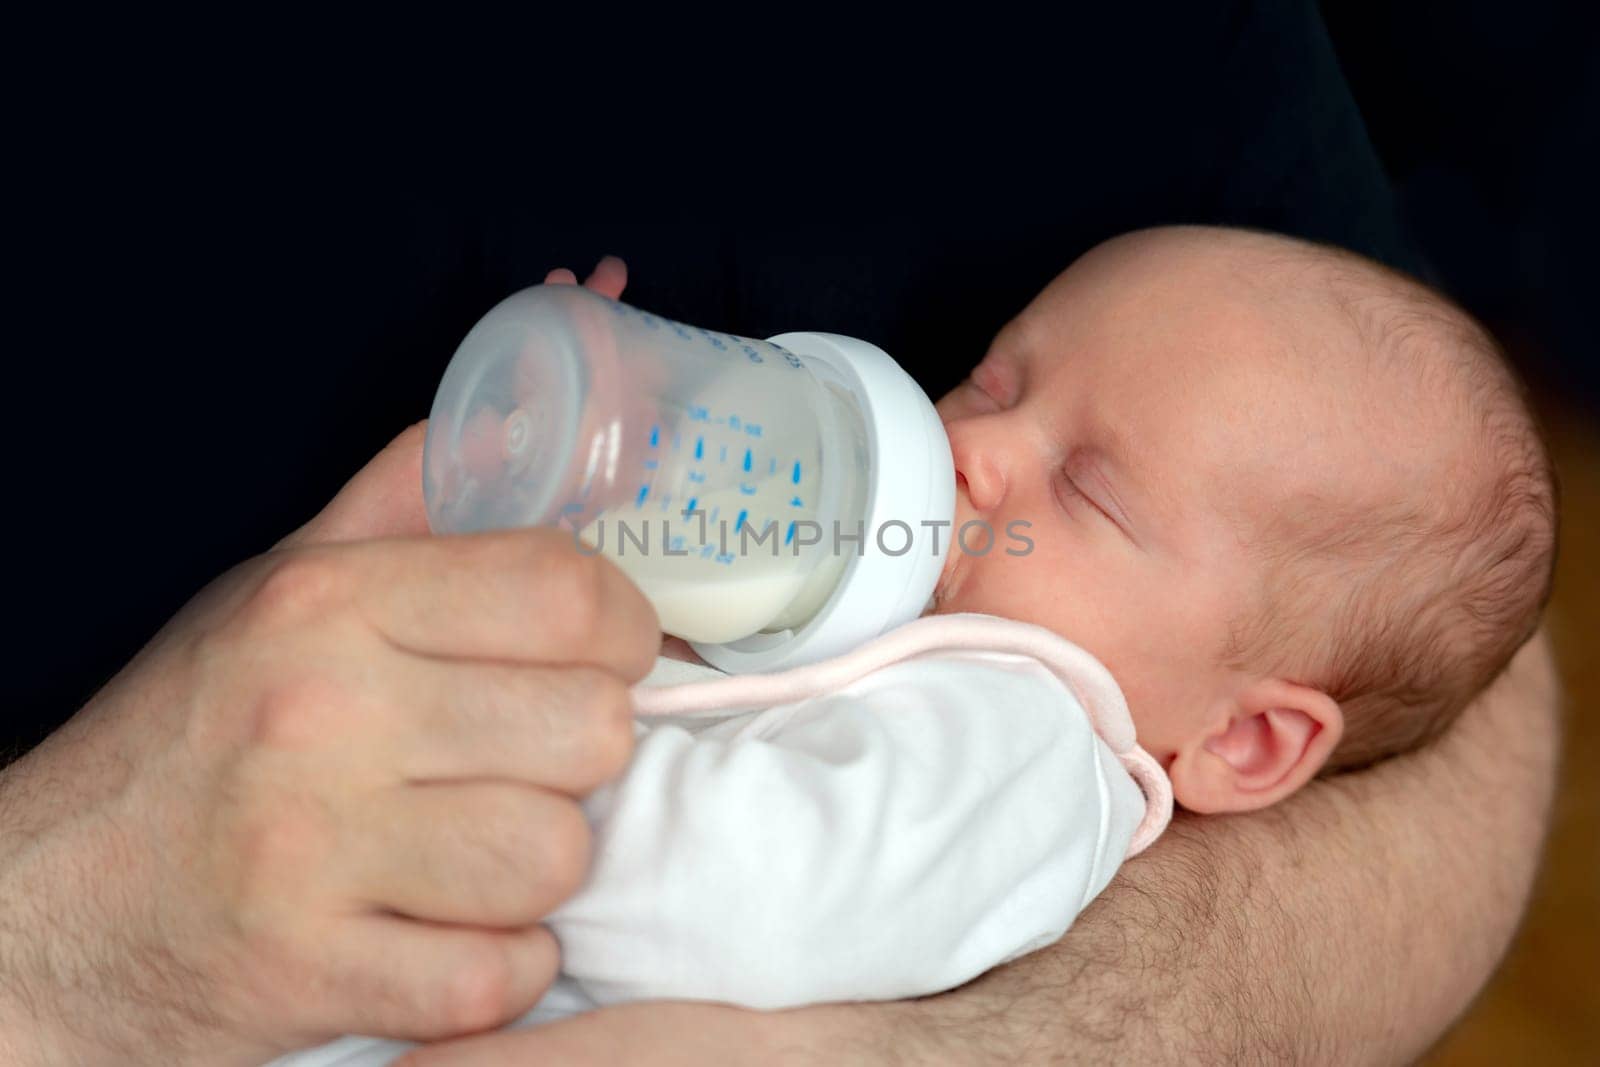 Little newborn baby eats milk formula from a bottle.